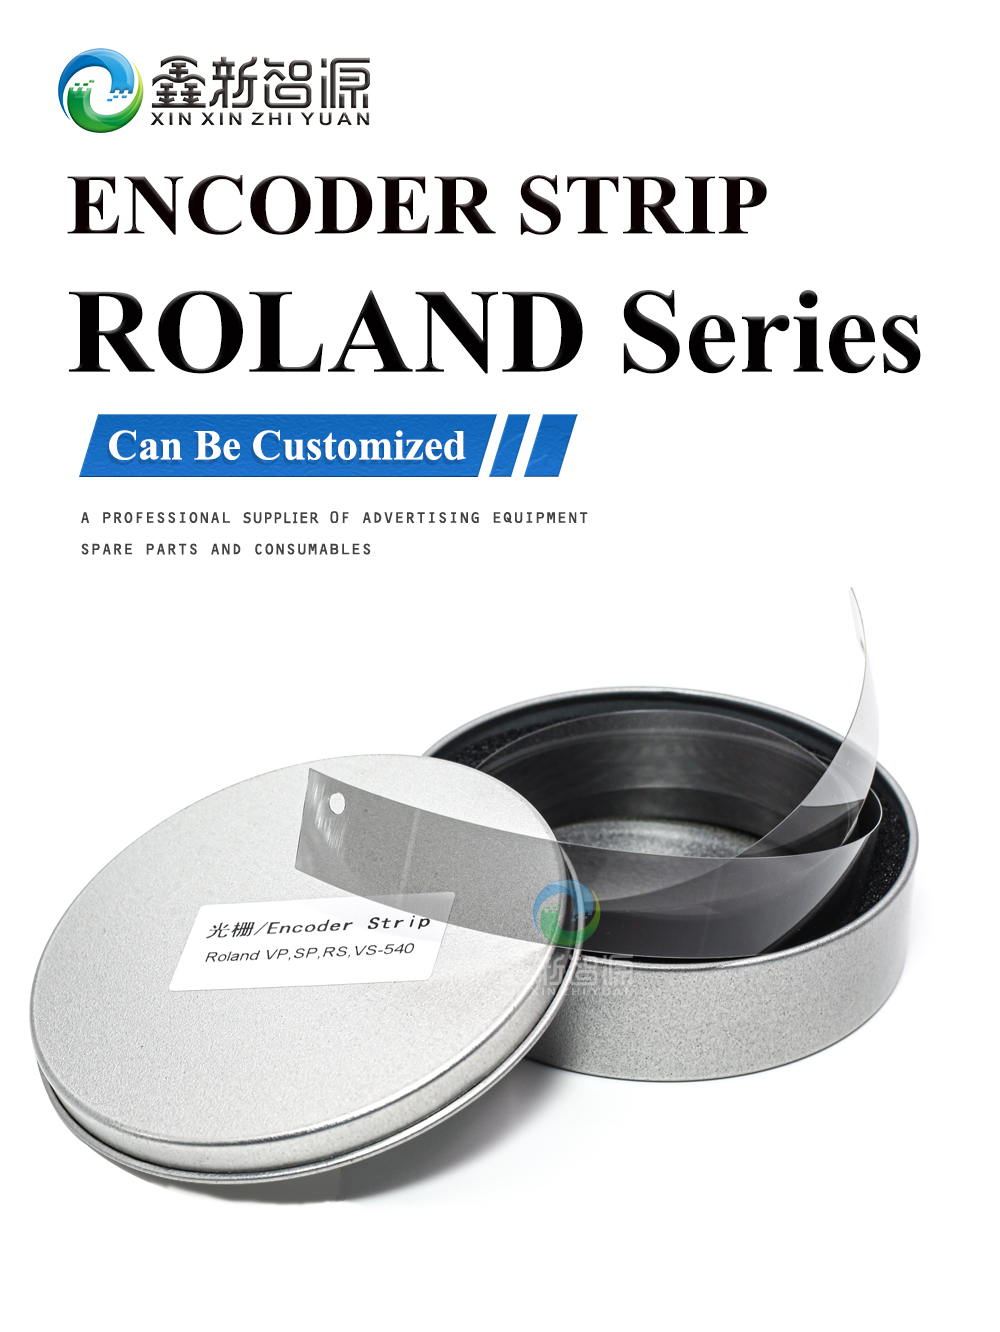 ROLAND Series Encoder Strip